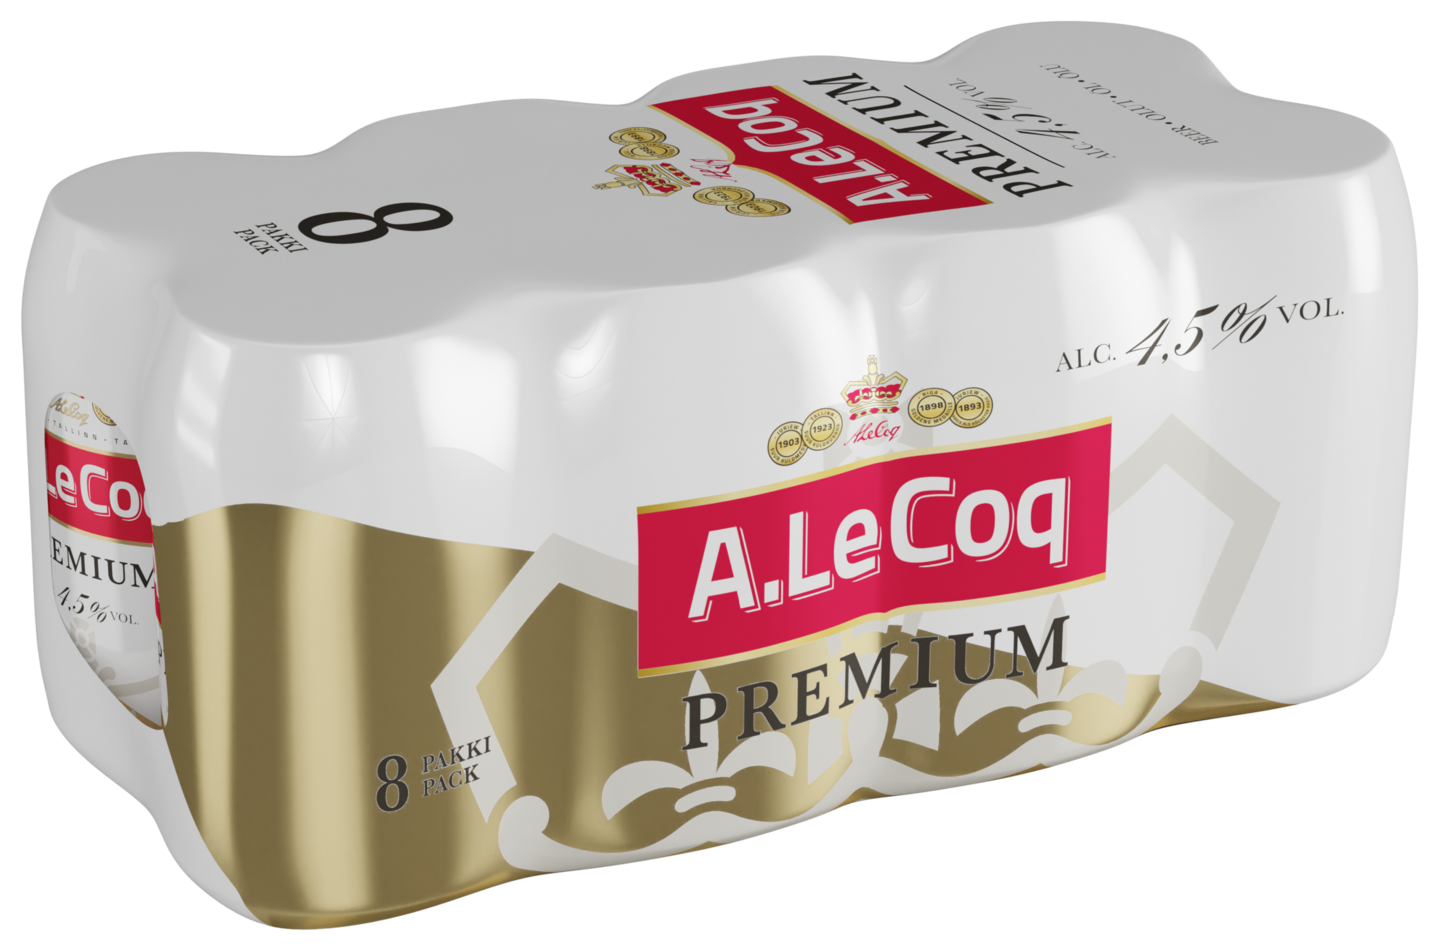 A.Le Coq Premium olut 4,5% 0,33l  8-pack DOLLY